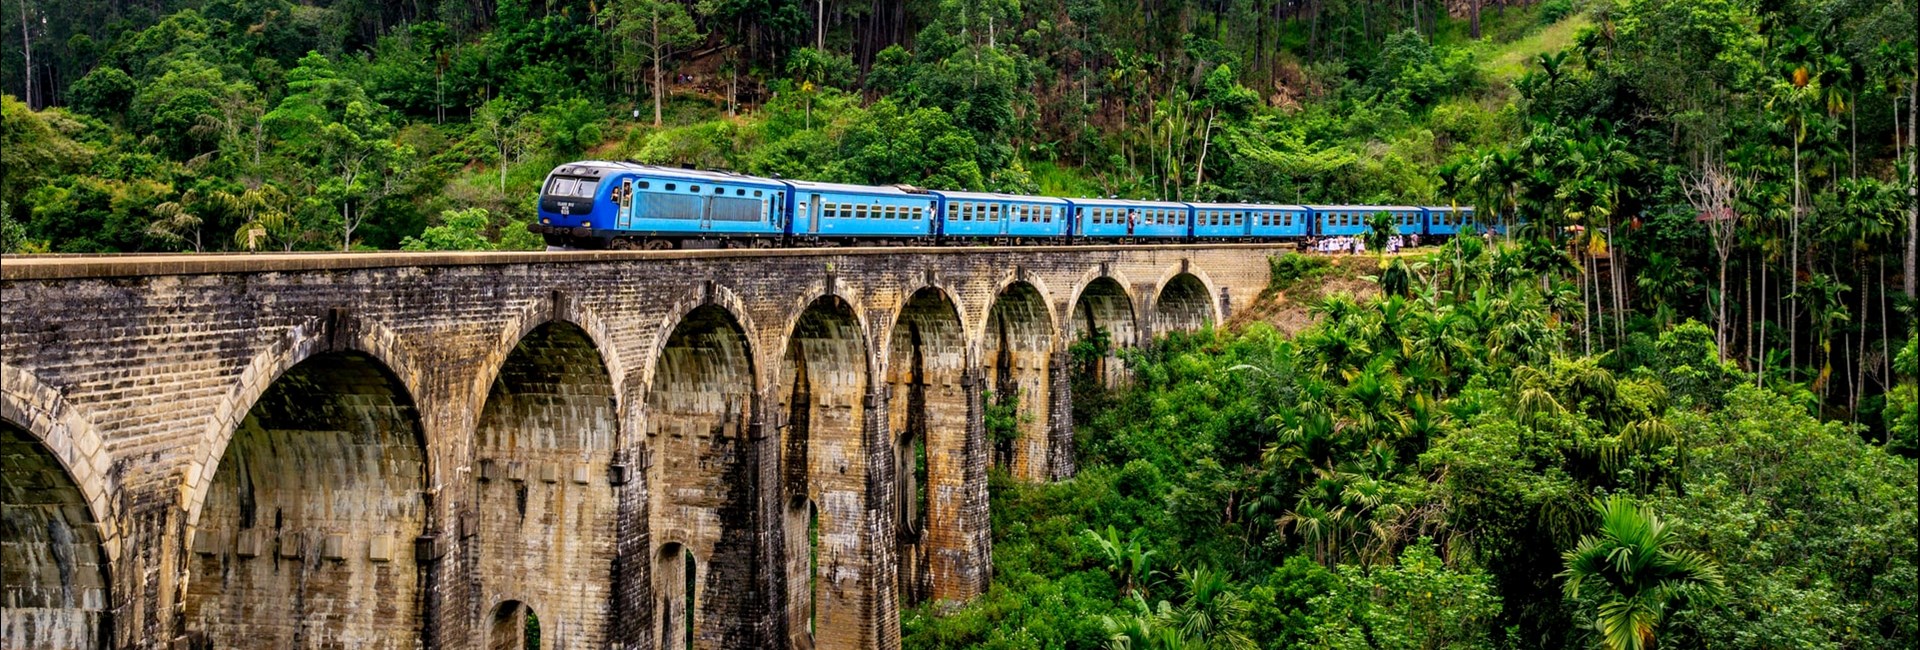 Blue train moving over a tall stone ridge through a rainforest 